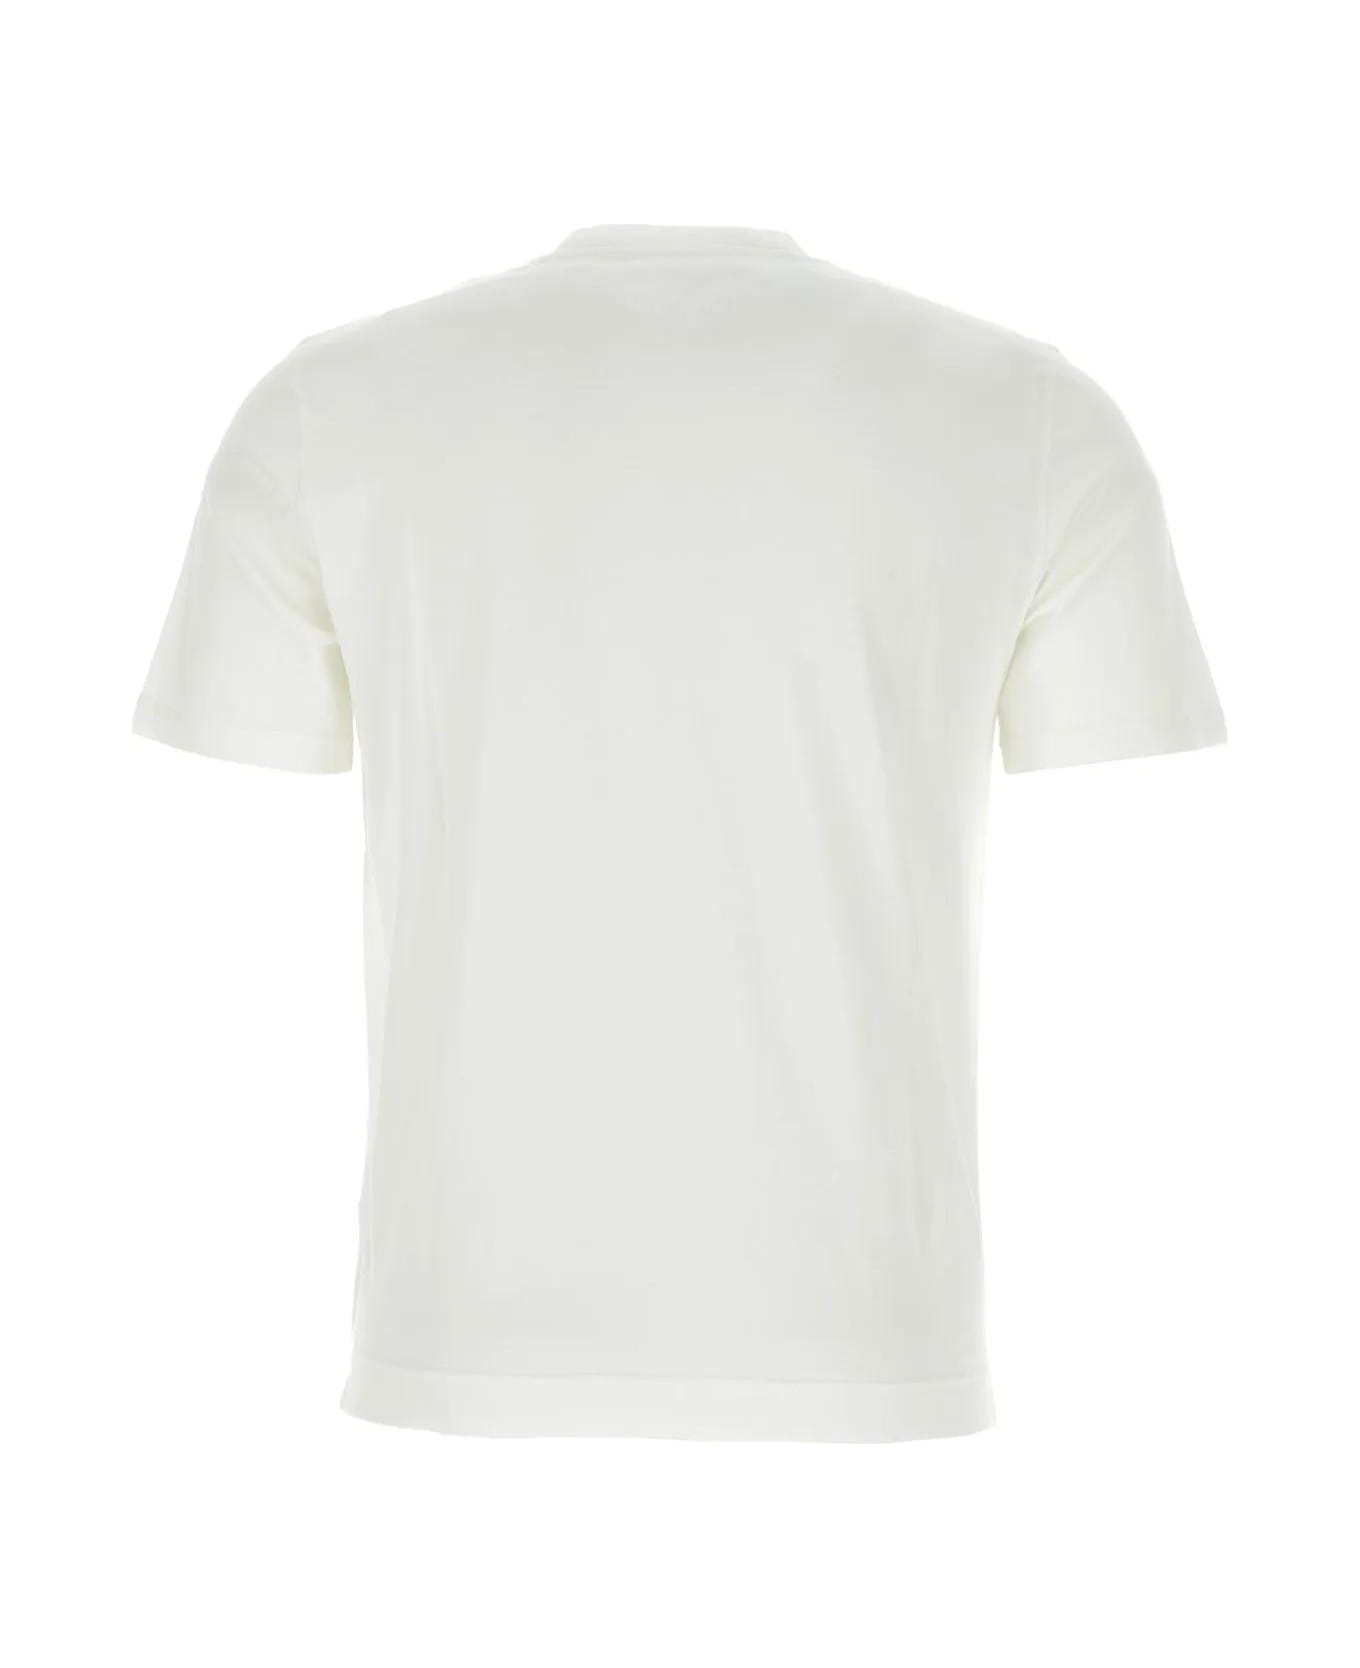 Fedeli White Cotton T-shirt シャツ